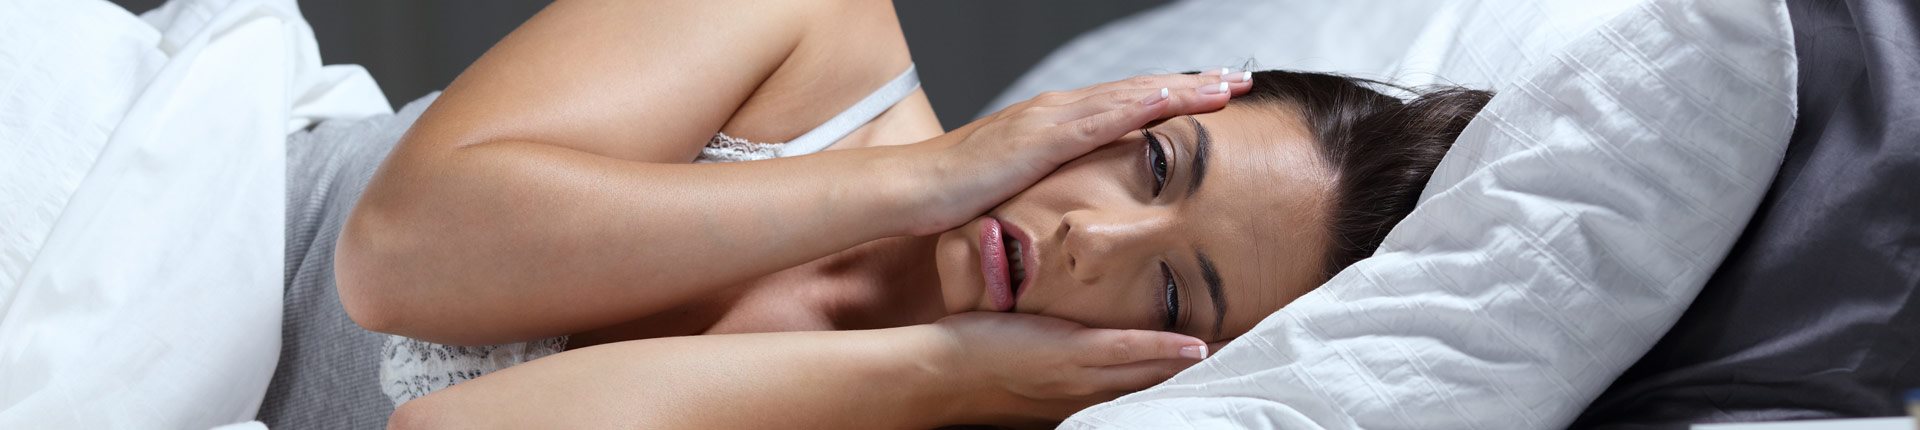 Melatonina a zaburzenia snu. Problemy z zasypianiem i częste wybudzanie